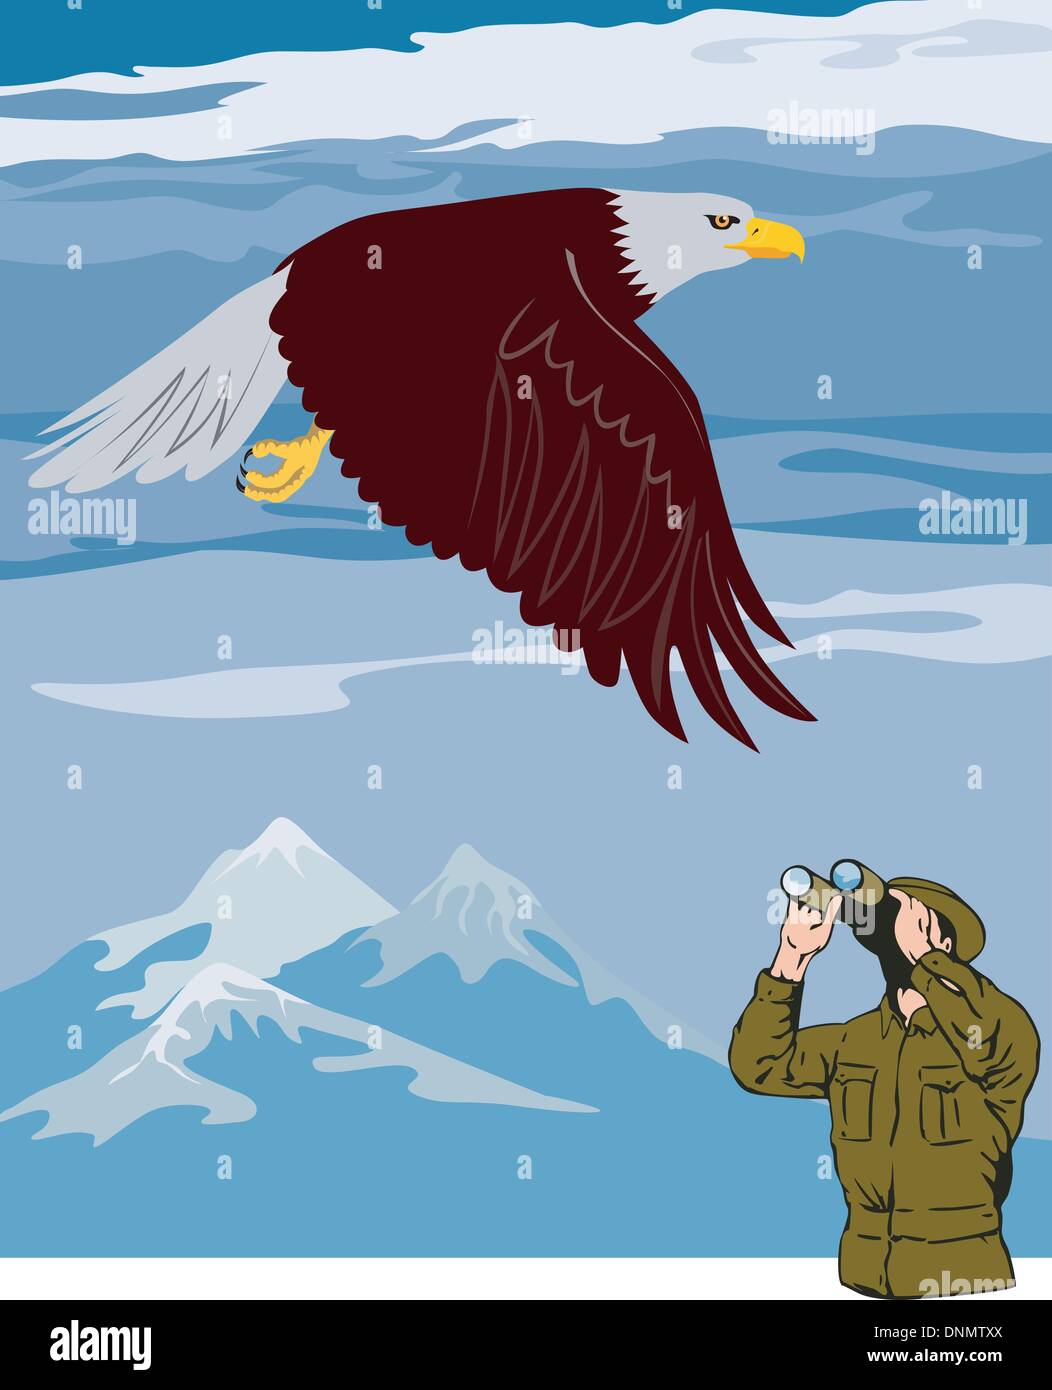 Ilustración de un hombre mirando un águila a través de unos prismáticos con las montañas en el fondo, hecho en estilo retro. Ilustración del Vector